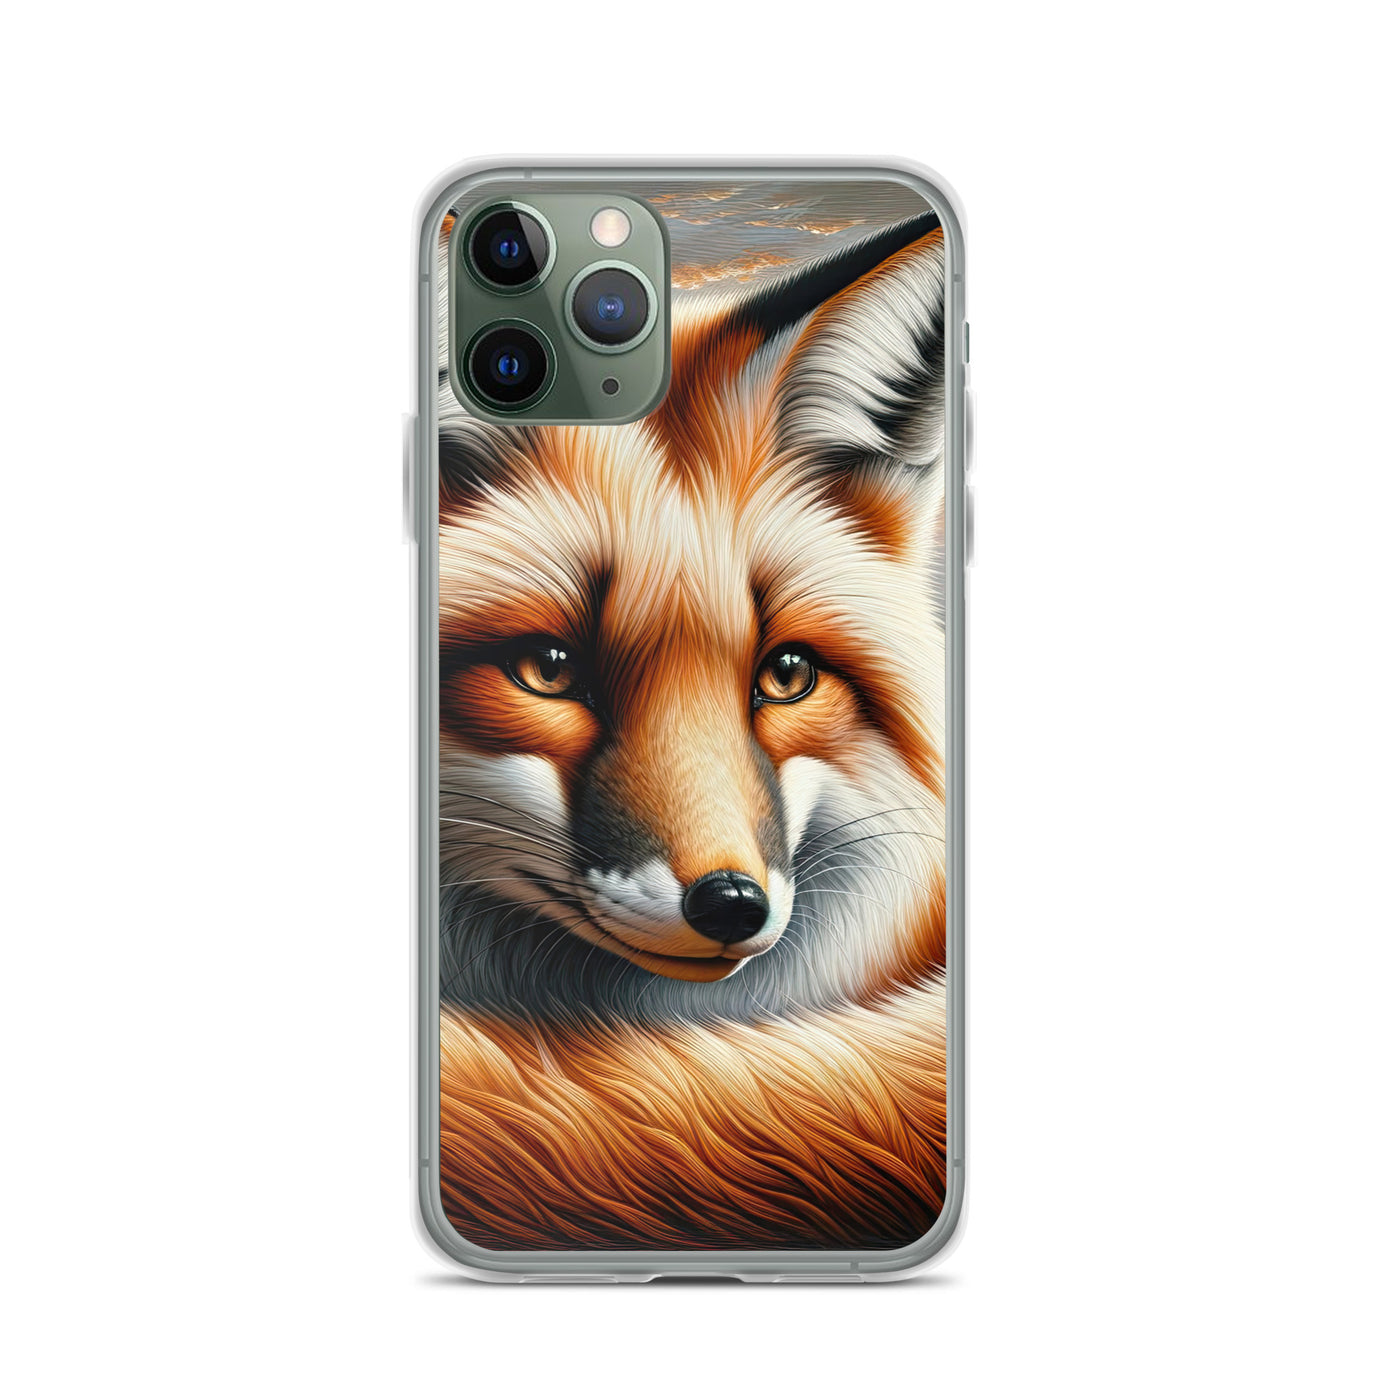 Ölgemälde eines nachdenklichen Fuchses mit weisem Blick - iPhone Schutzhülle (durchsichtig) camping xxx yyy zzz iPhone 11 Pro